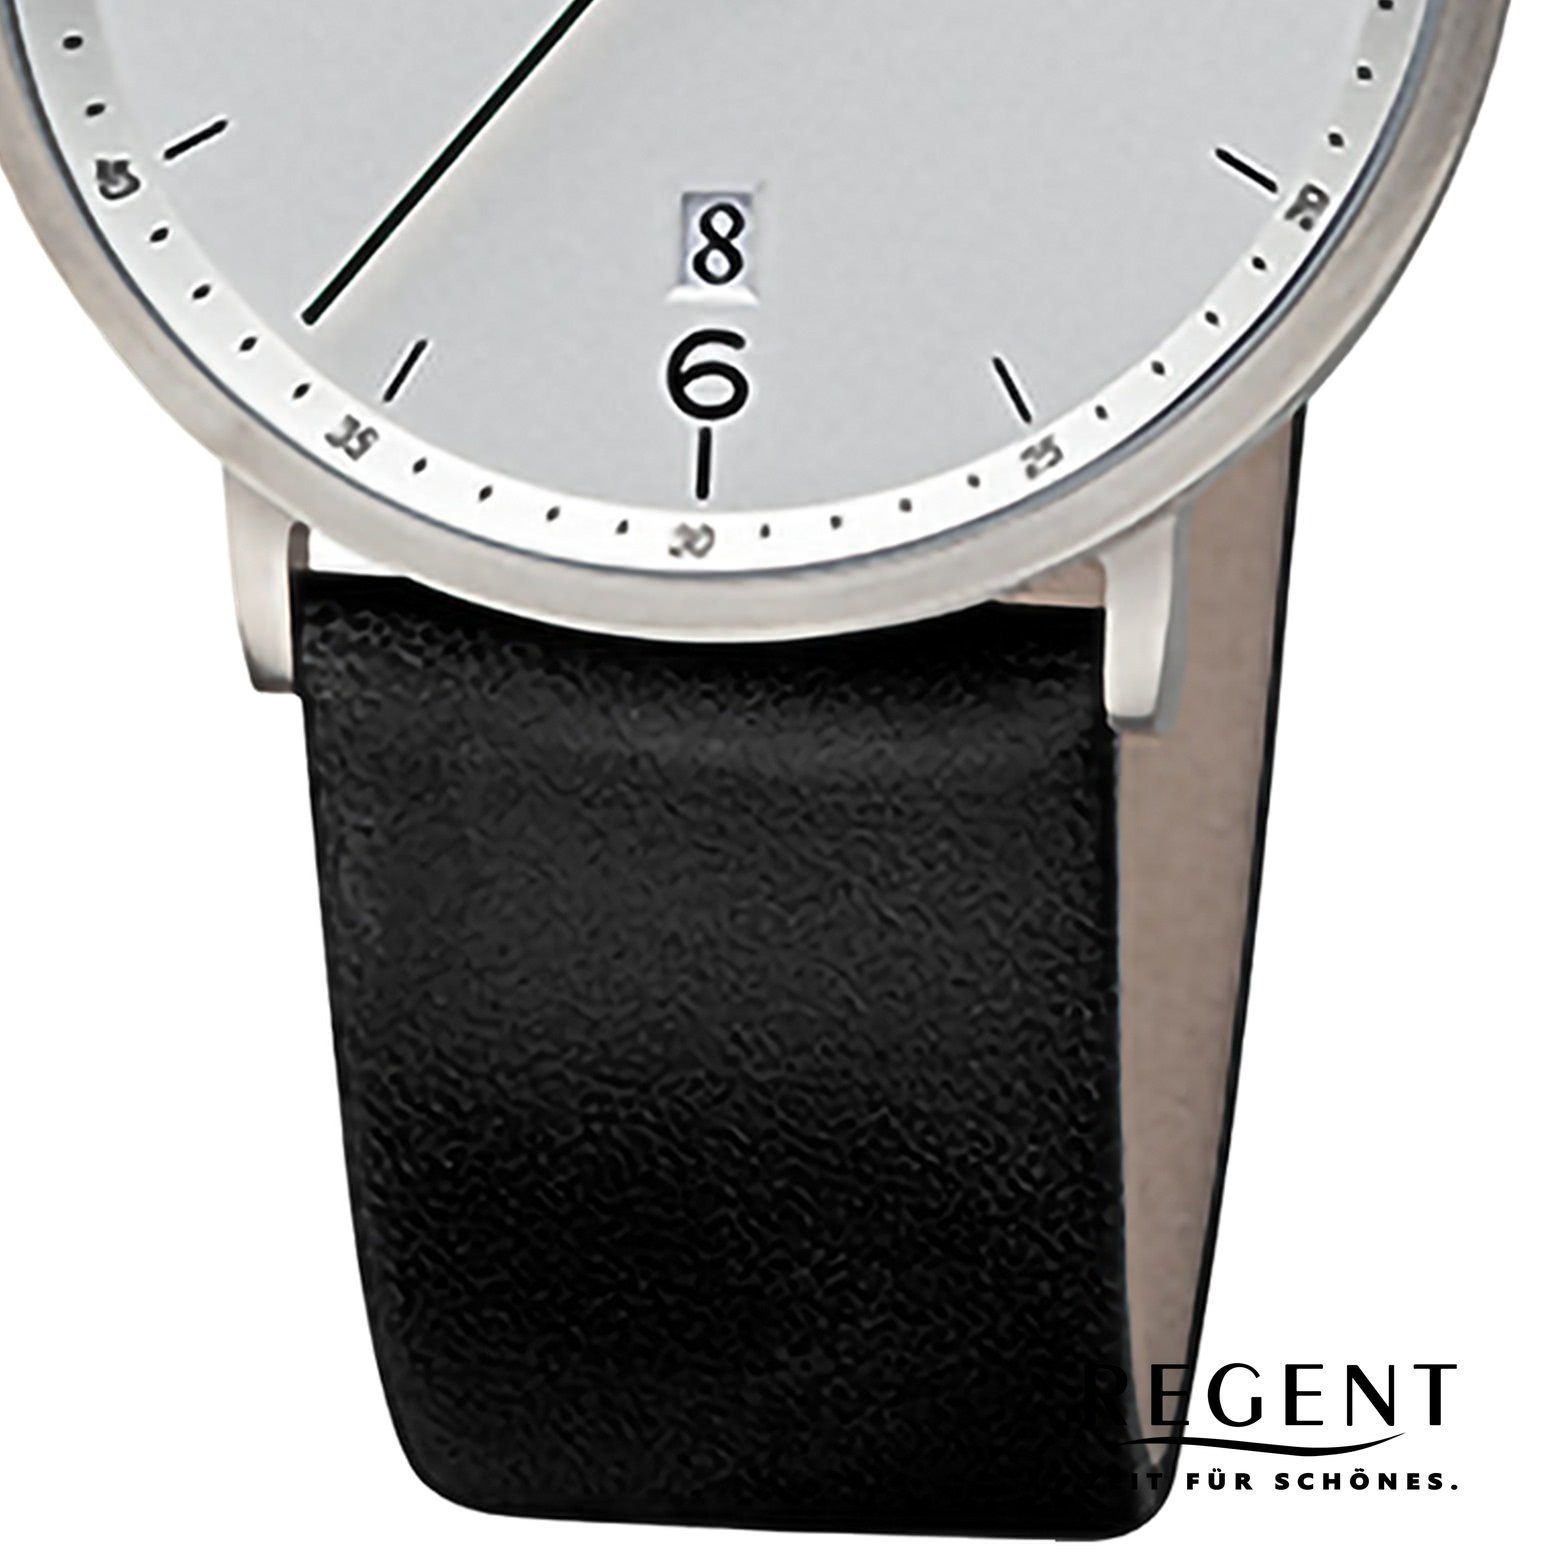 Herren 39mm), Regent Analog, groß Armbanduhr Lederarmband Armbanduhr (ca. Quarzuhr Herren rund, Regent extra